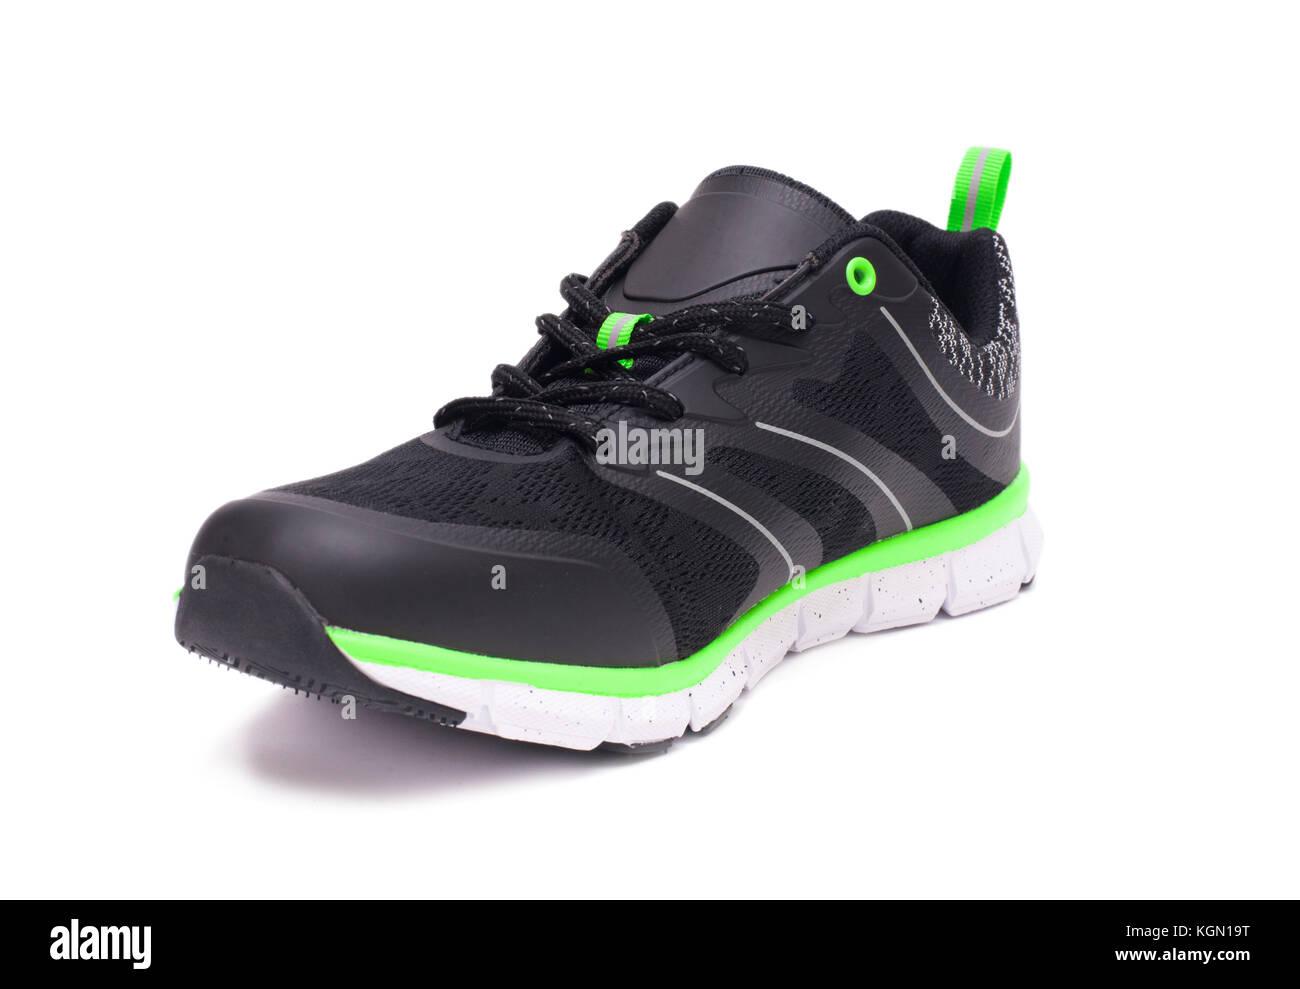 Lime Green et black sport chaussures unisexe isolé sur fond blanc Banque D'Images